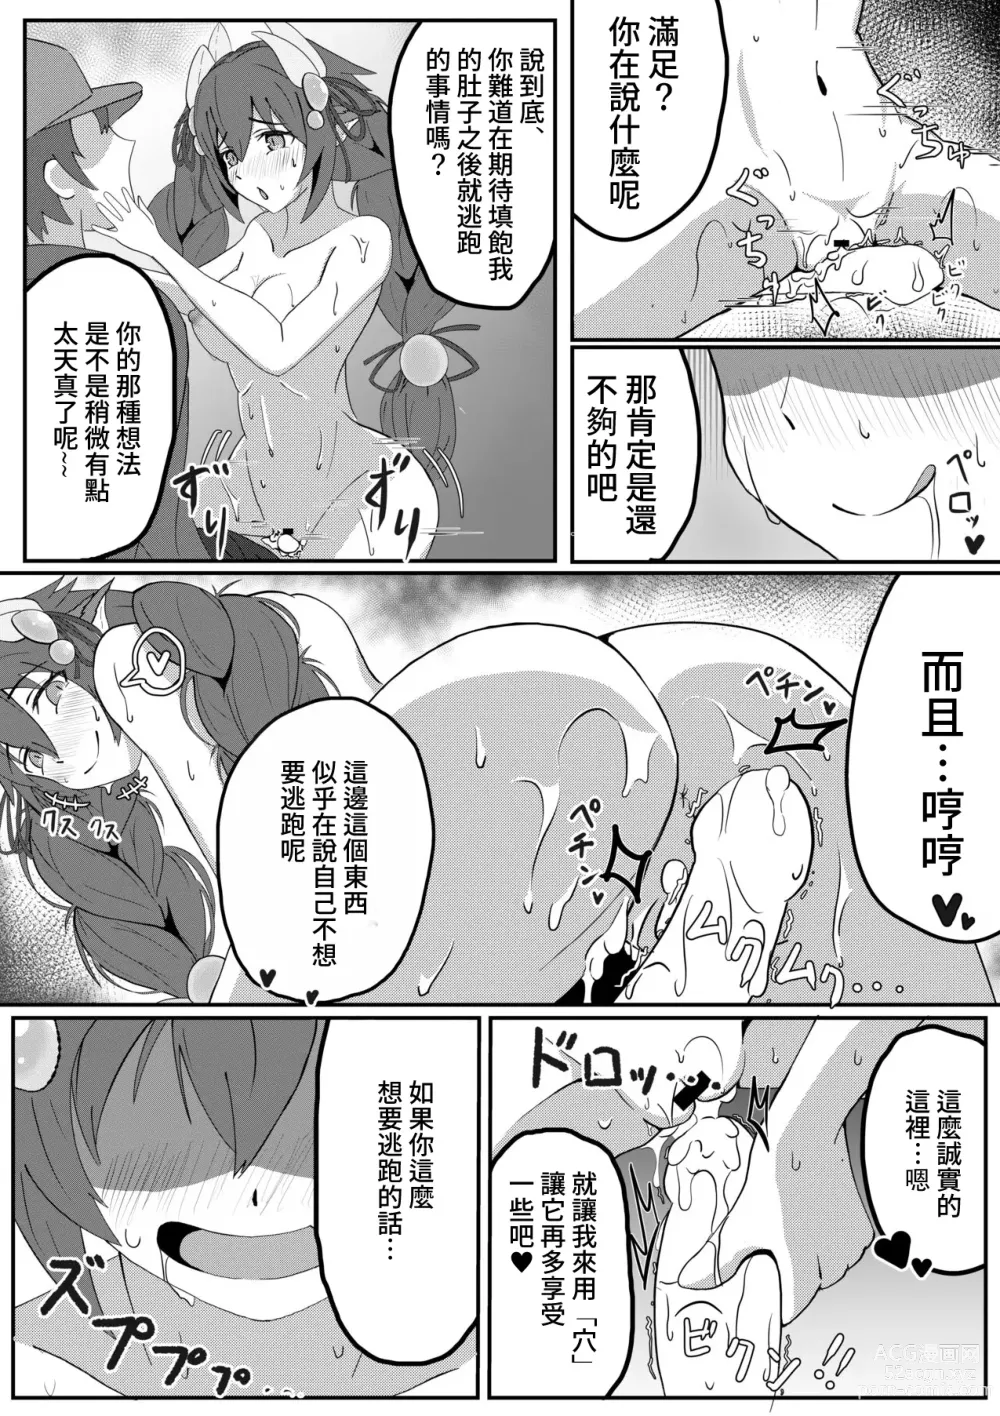 Page 6 of doujinshi Atrax ni Tsukamatte Oishiku Taberareru Ippan Kettousha no Manga